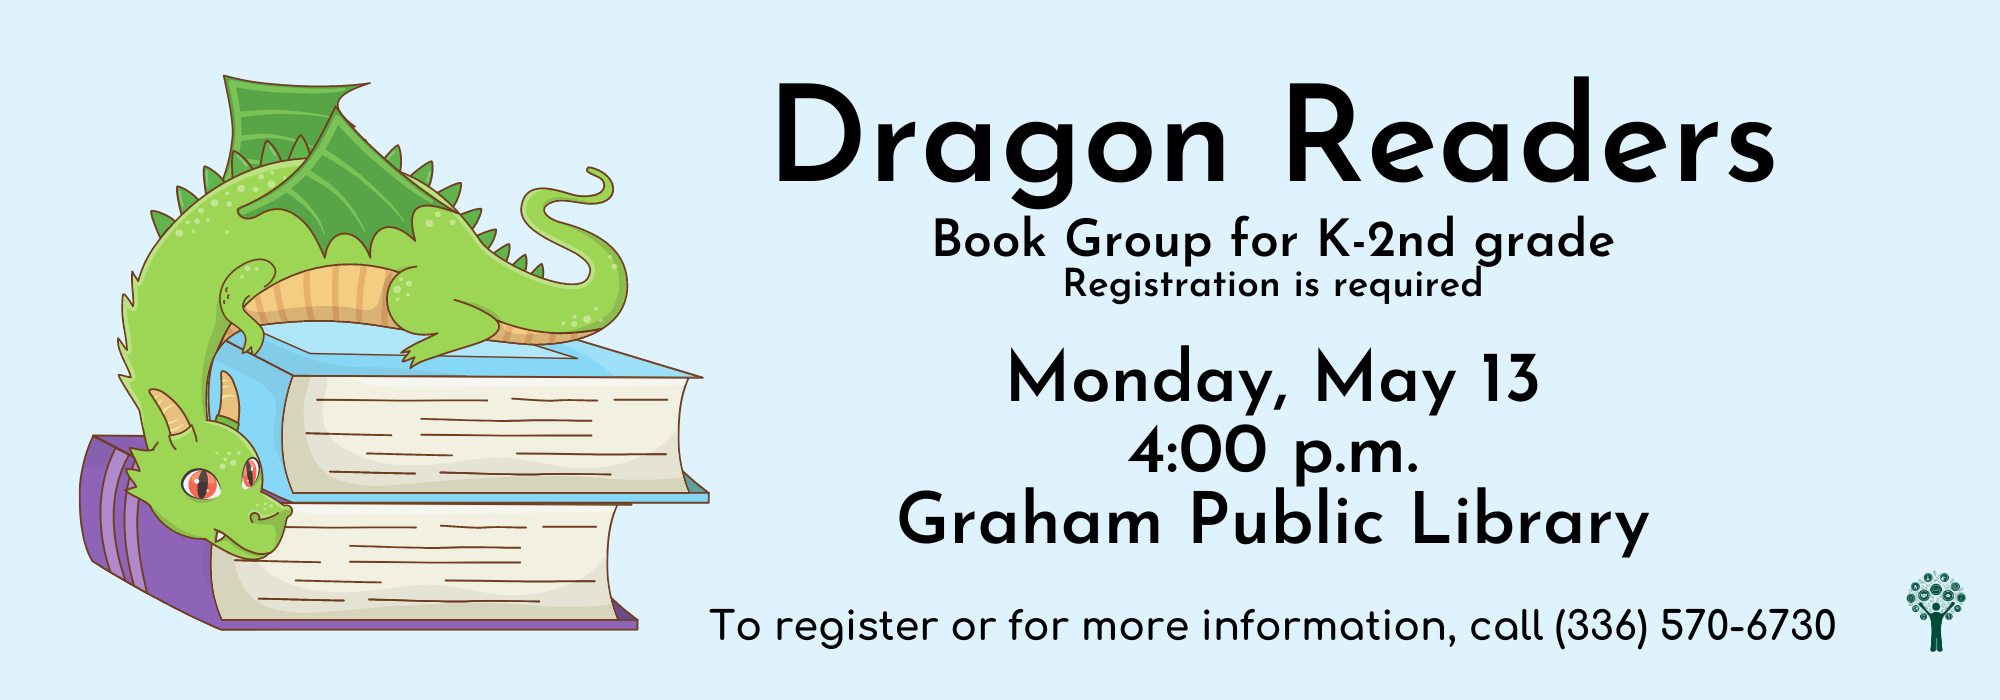 5.13 at 4 pm - Dragon Readers Book Group at Graham